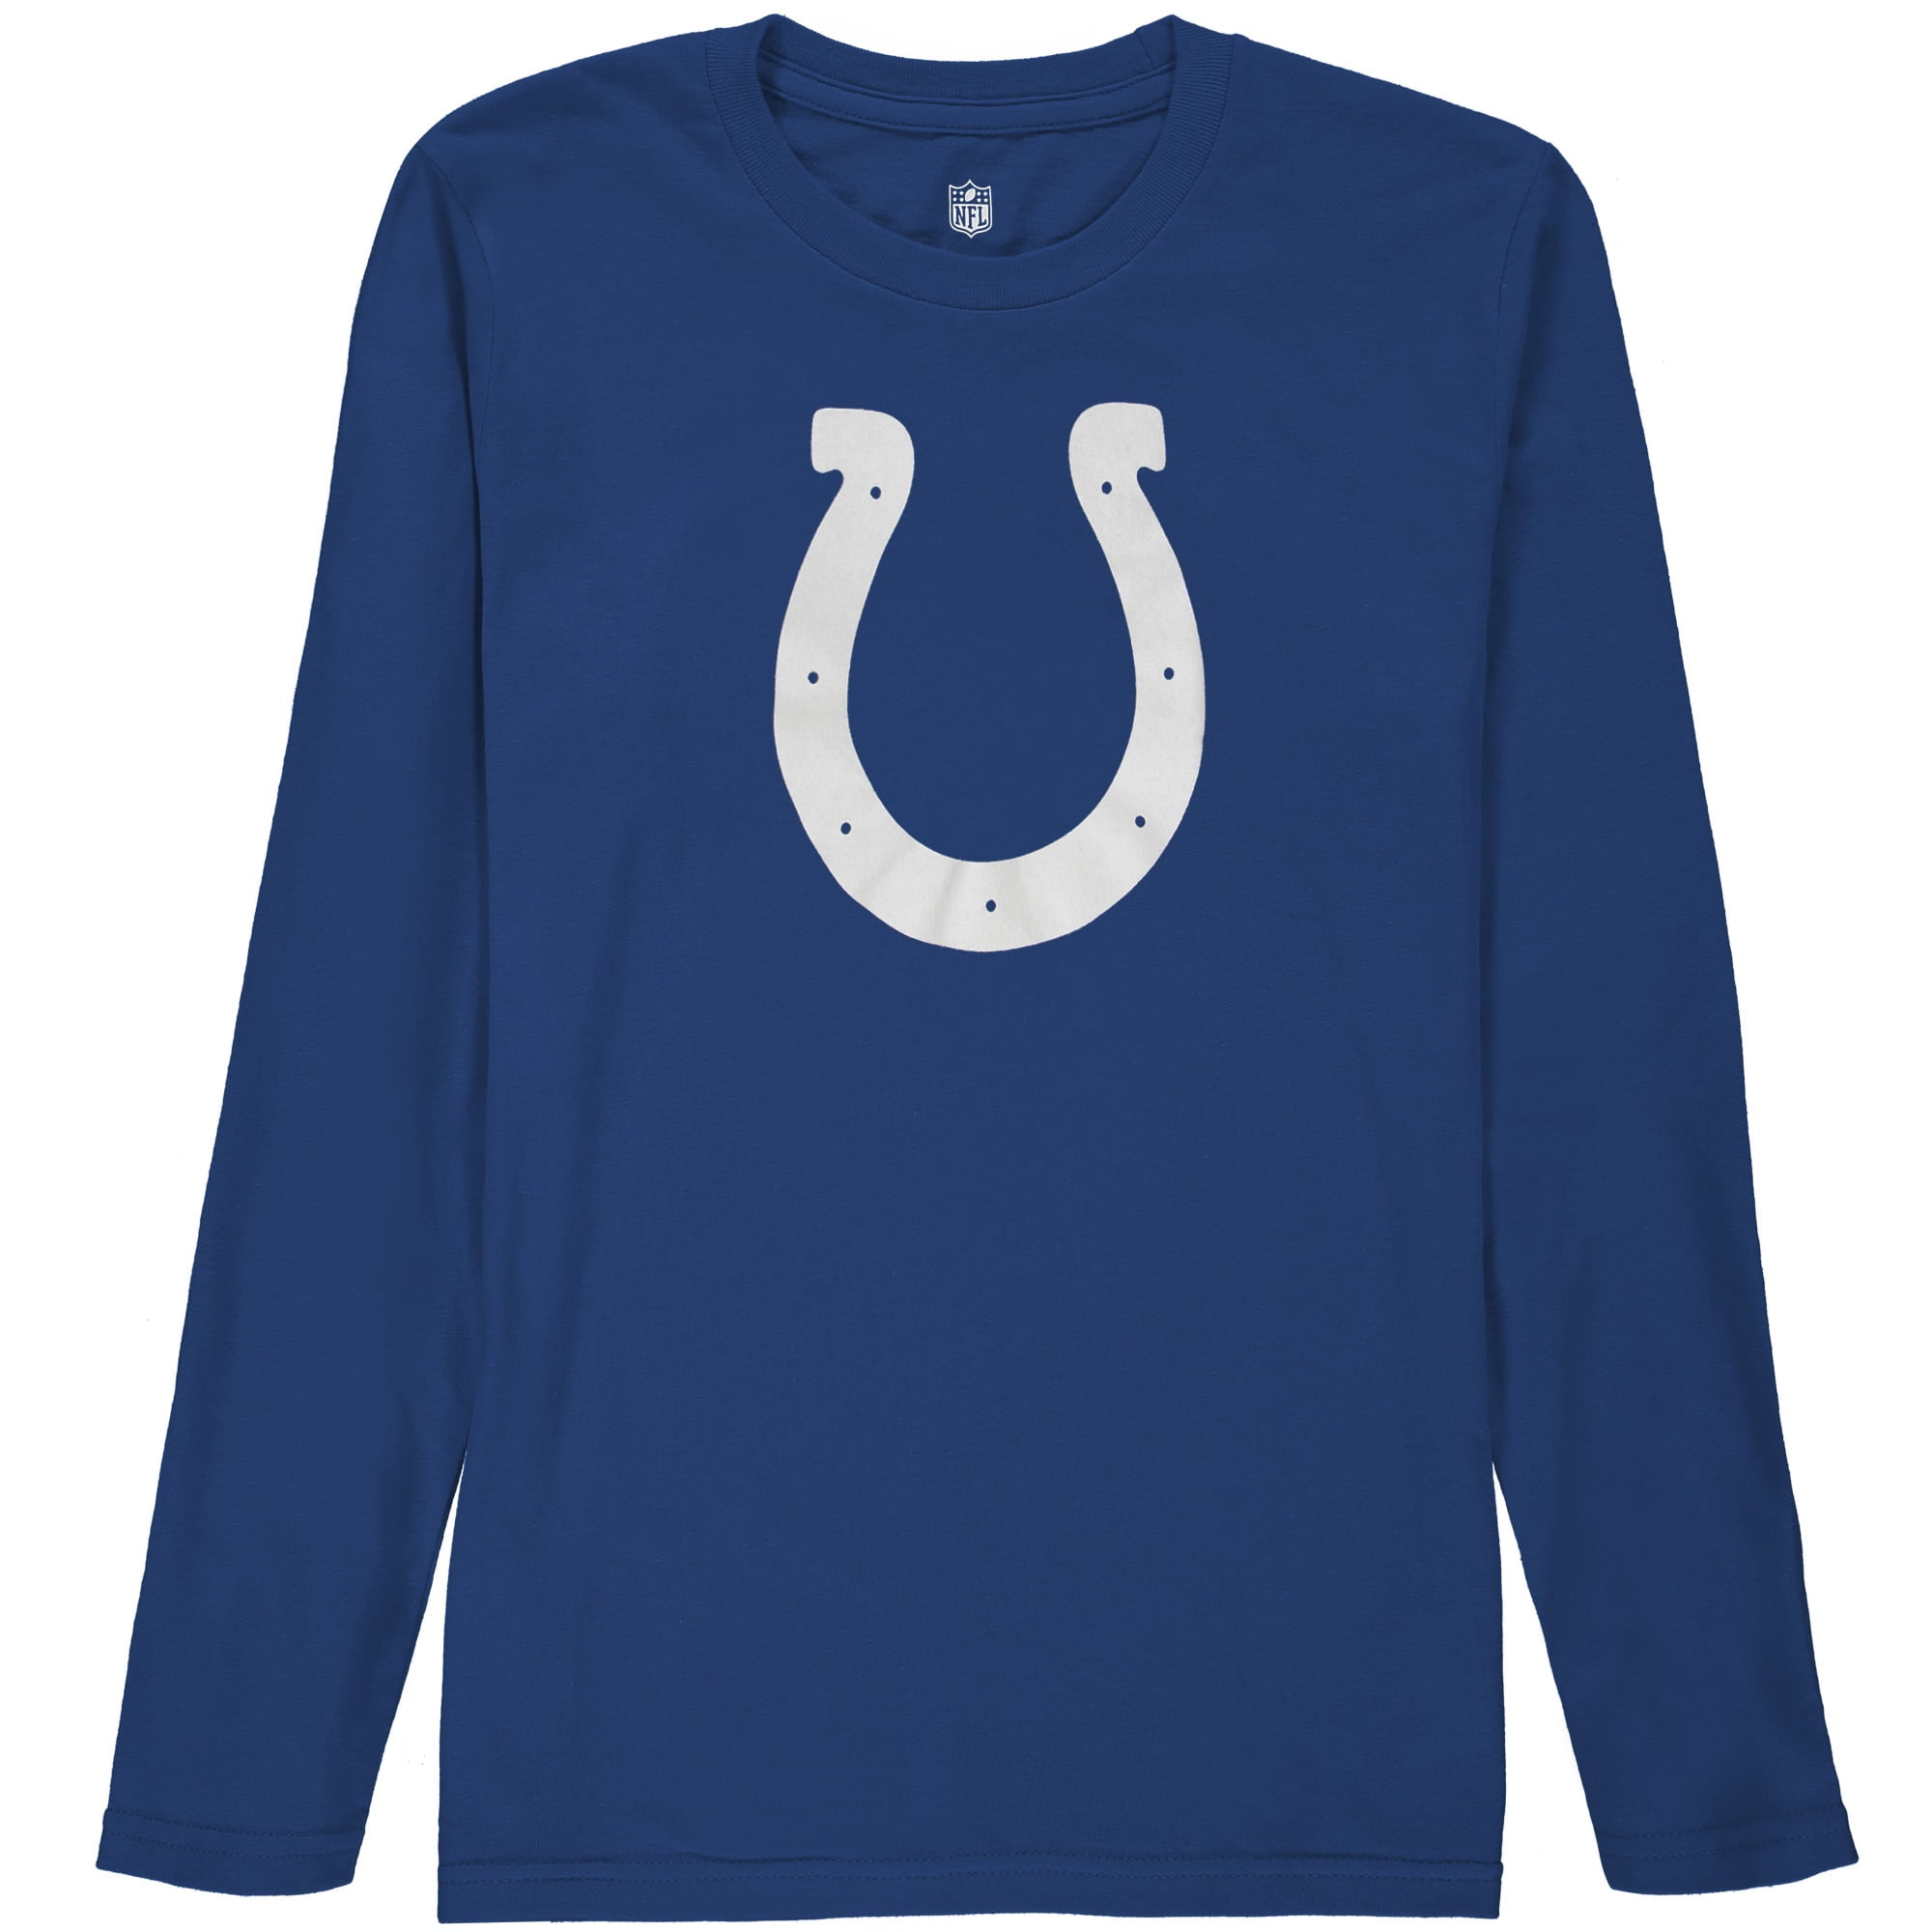 سامسونج جالكسي اس Indianapolis Colts Logo Long Sleeve T-Shirt D.Blue صور زواحف